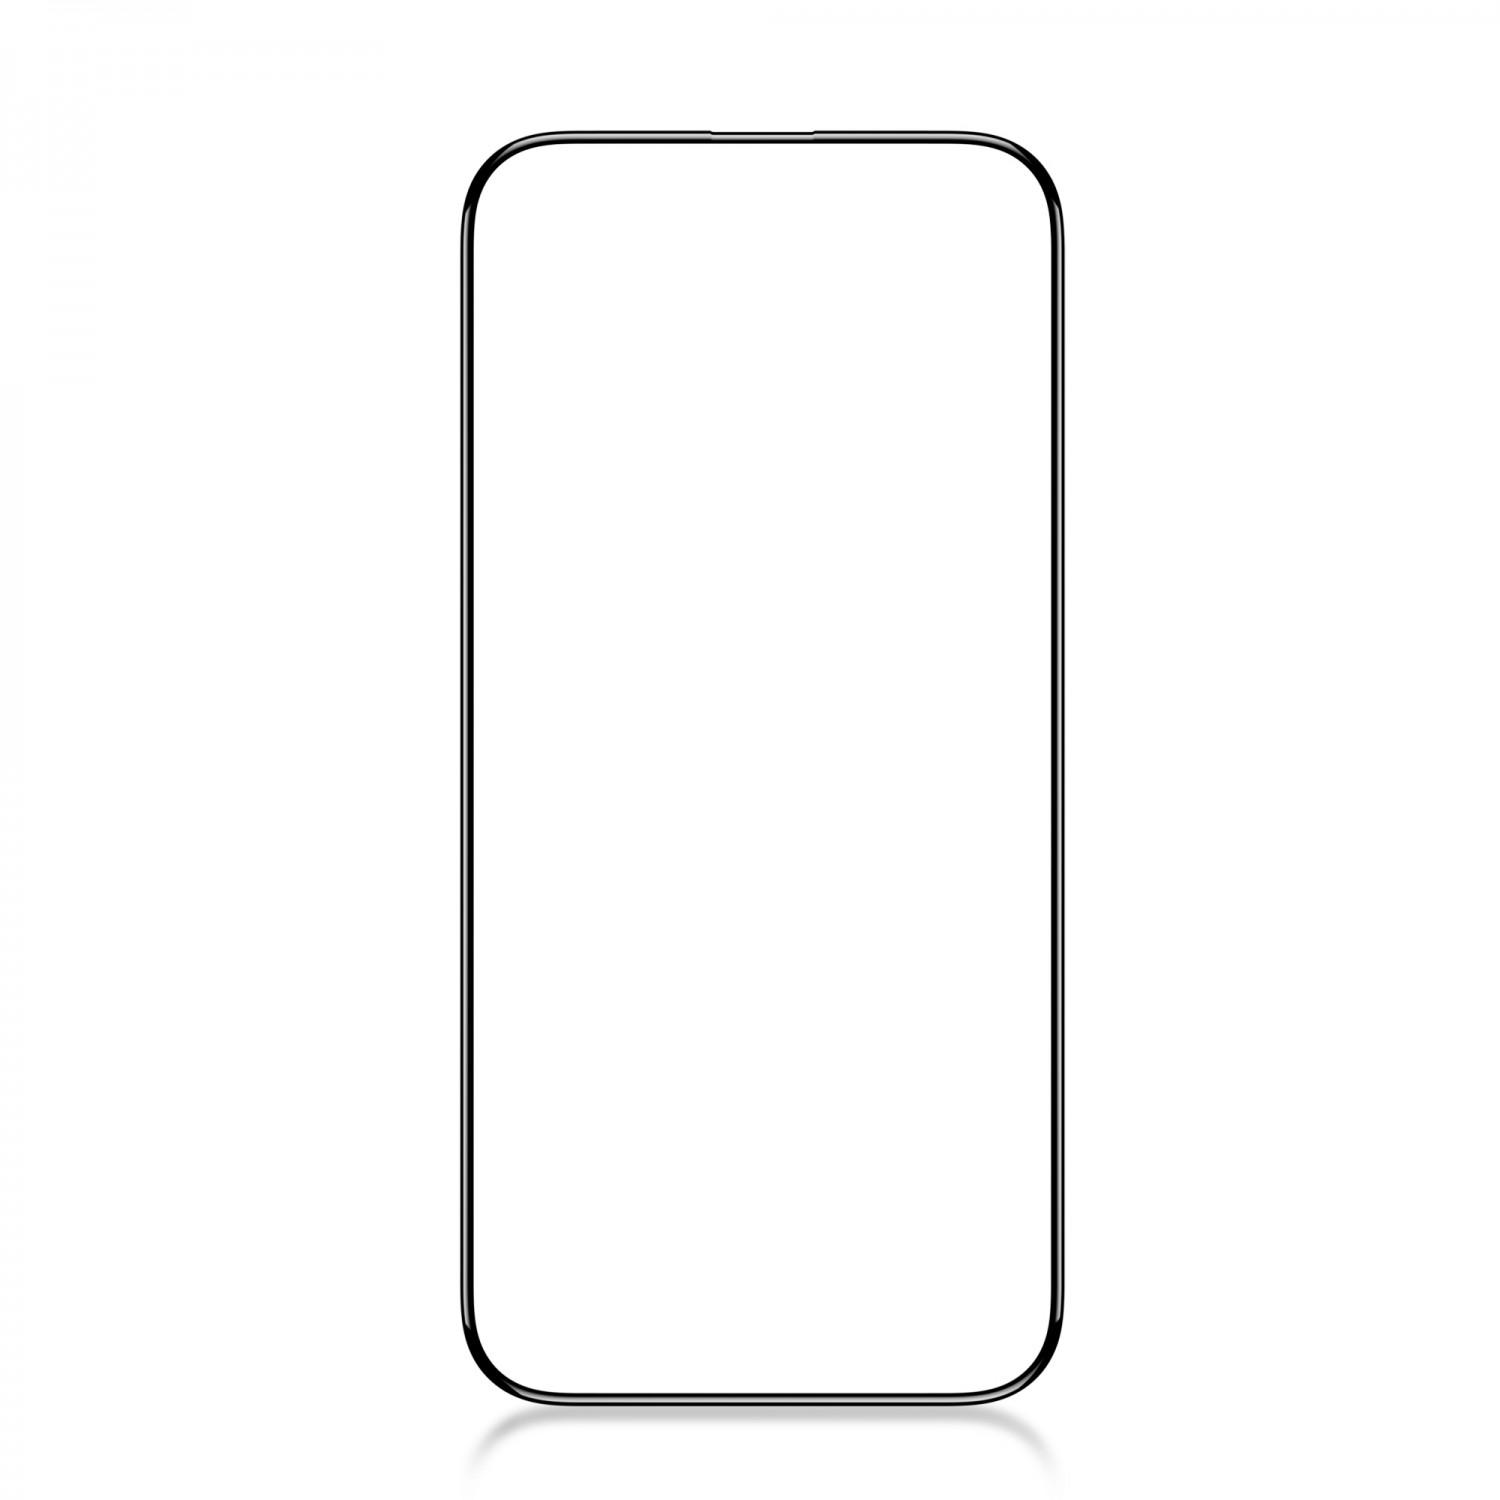 لاصقة حماية الشاشة لموبايل ايفون 14 برو ماكس زجاجية جرين Green 3D PET HD Glass Screen Protector for iPhone 14 Pro Max Clear - cG9zdDoxMzc5NzE2